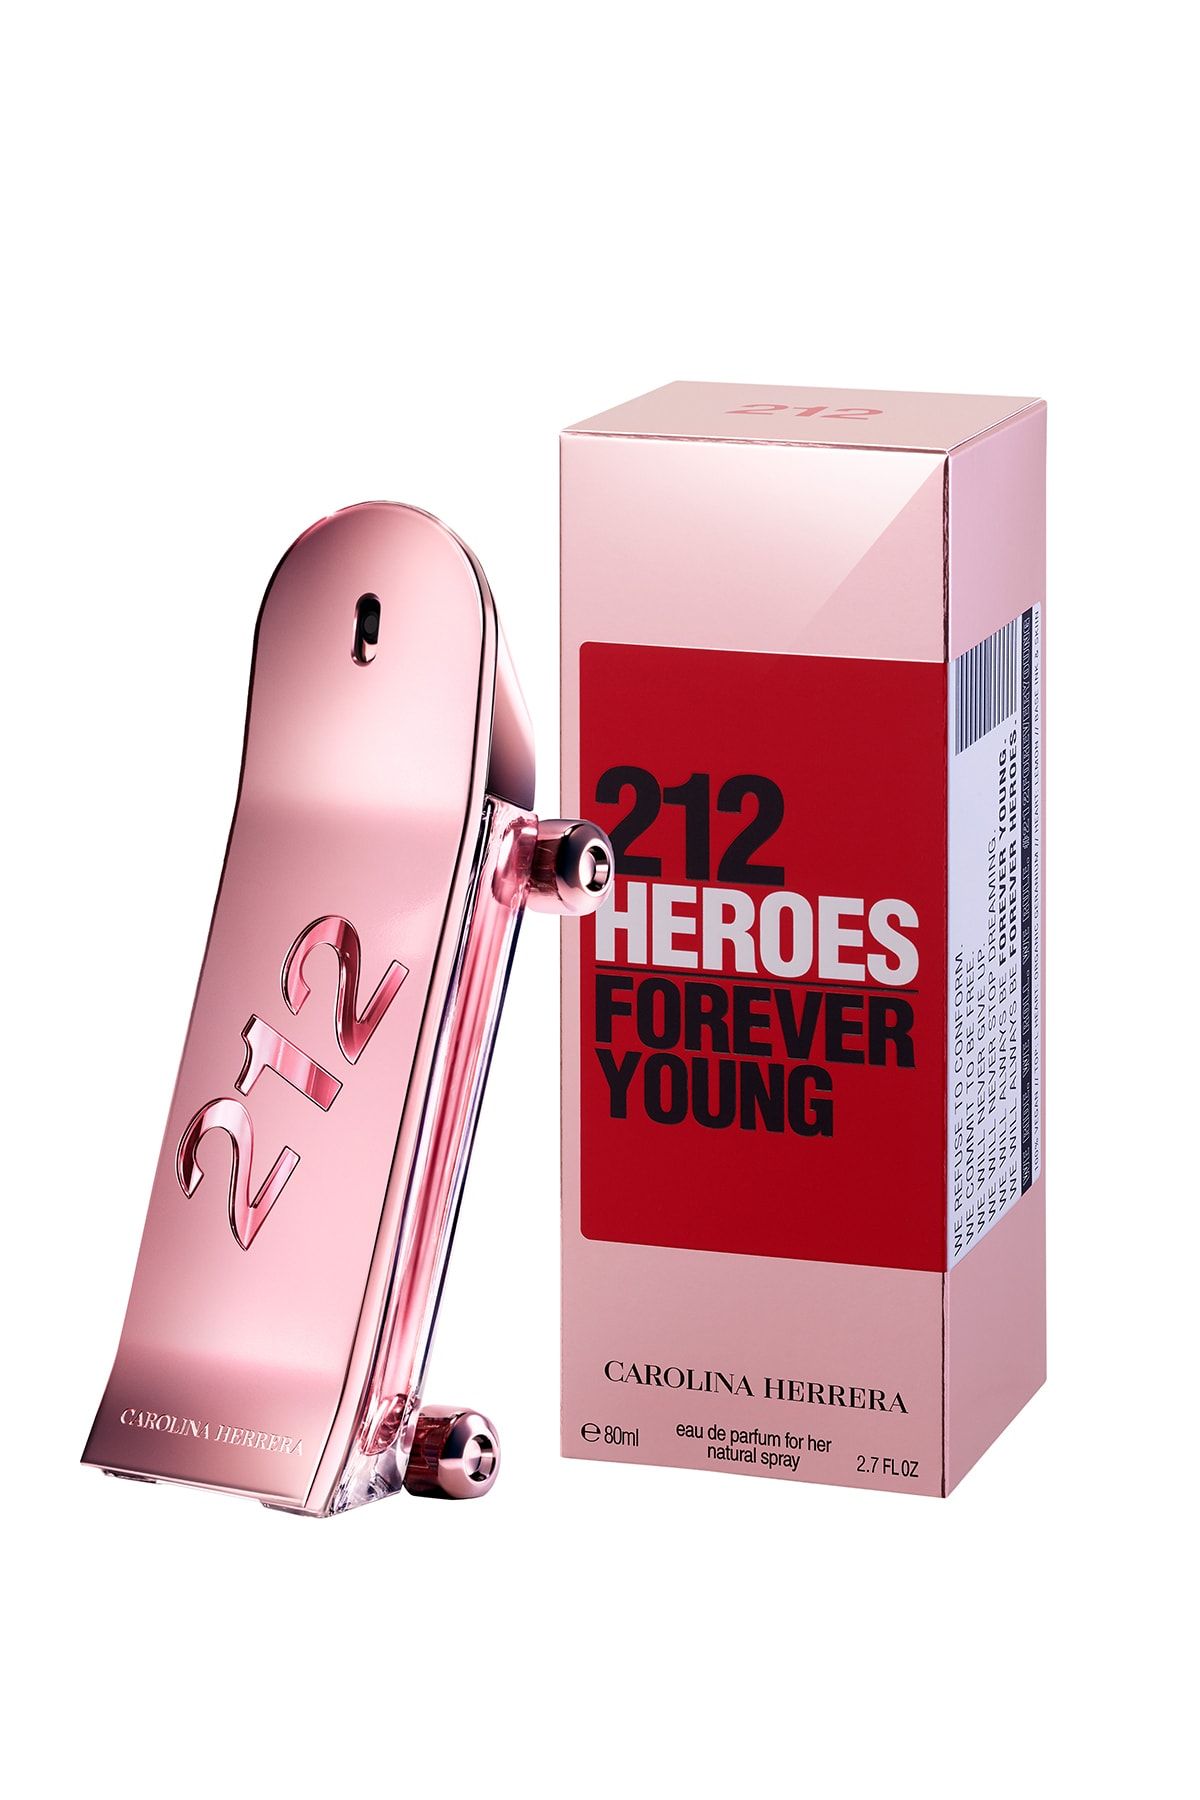 Carolina Herrera 212 Heroes For Her Edp 80 Ml